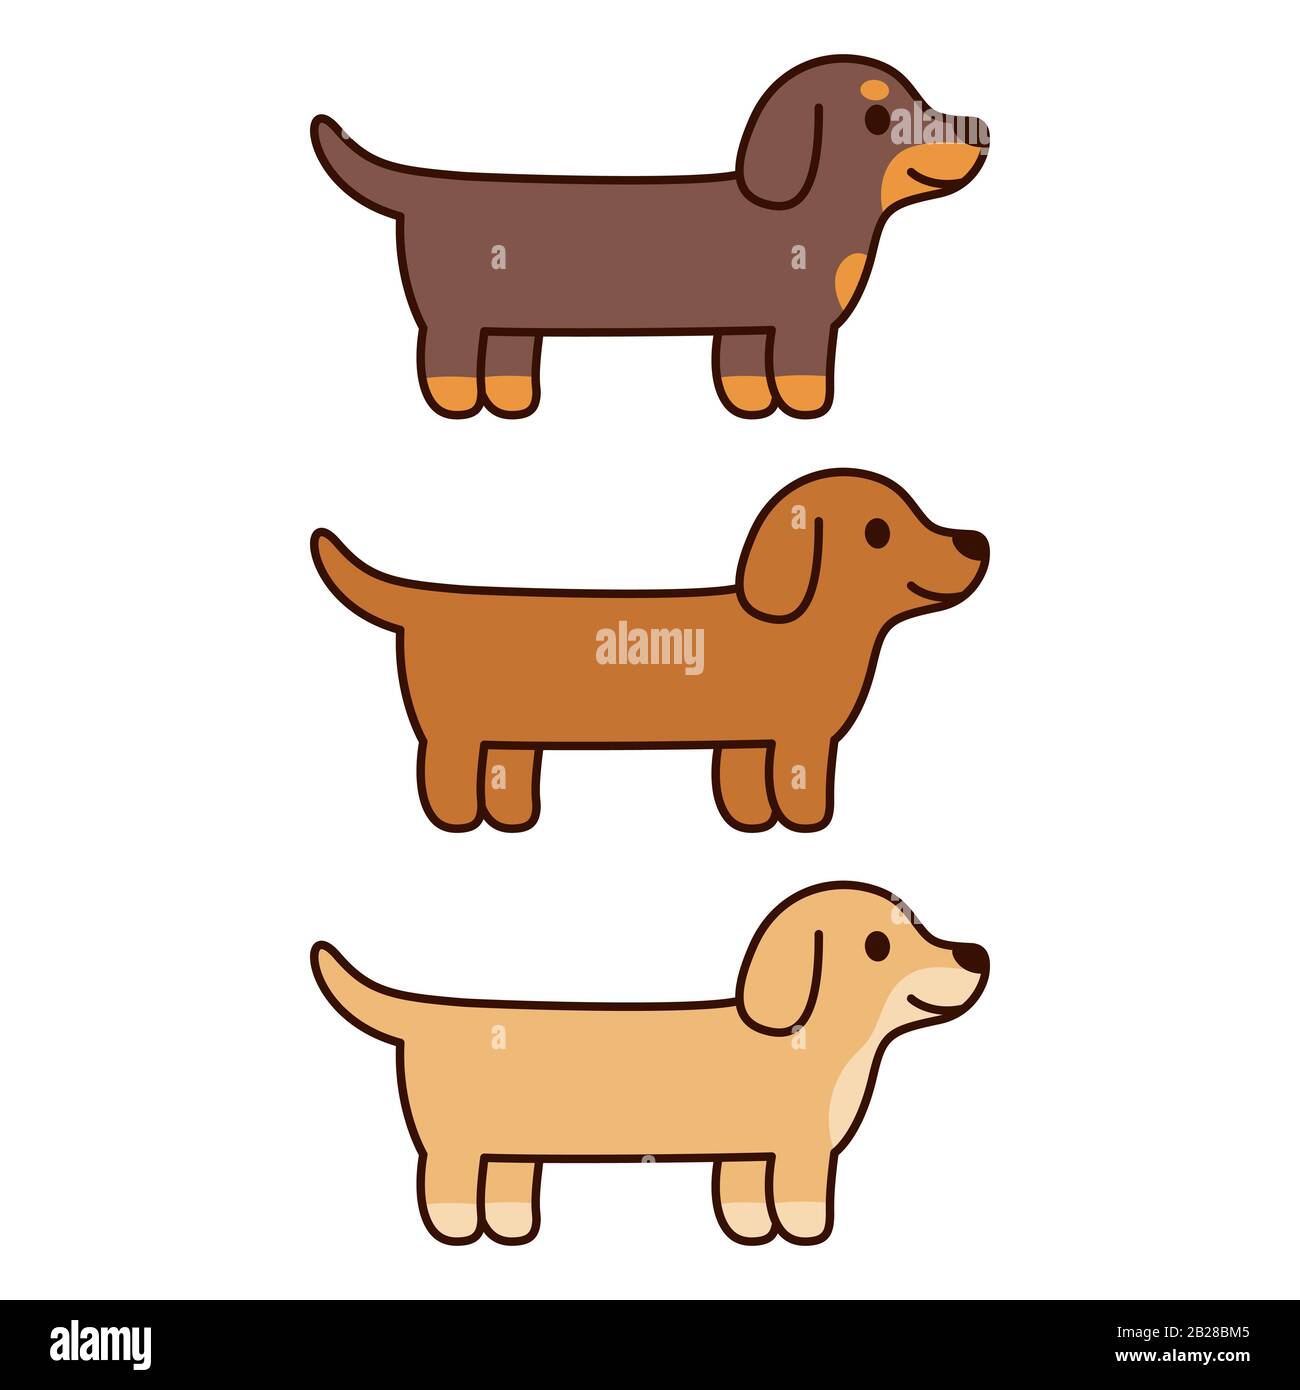 Trois Dachshunds de dessin animé, couleur noire, brune et crème. Joli et simple jeu de dessin pour chien, illustration de clip vectoriel. Illustration de Vecteur